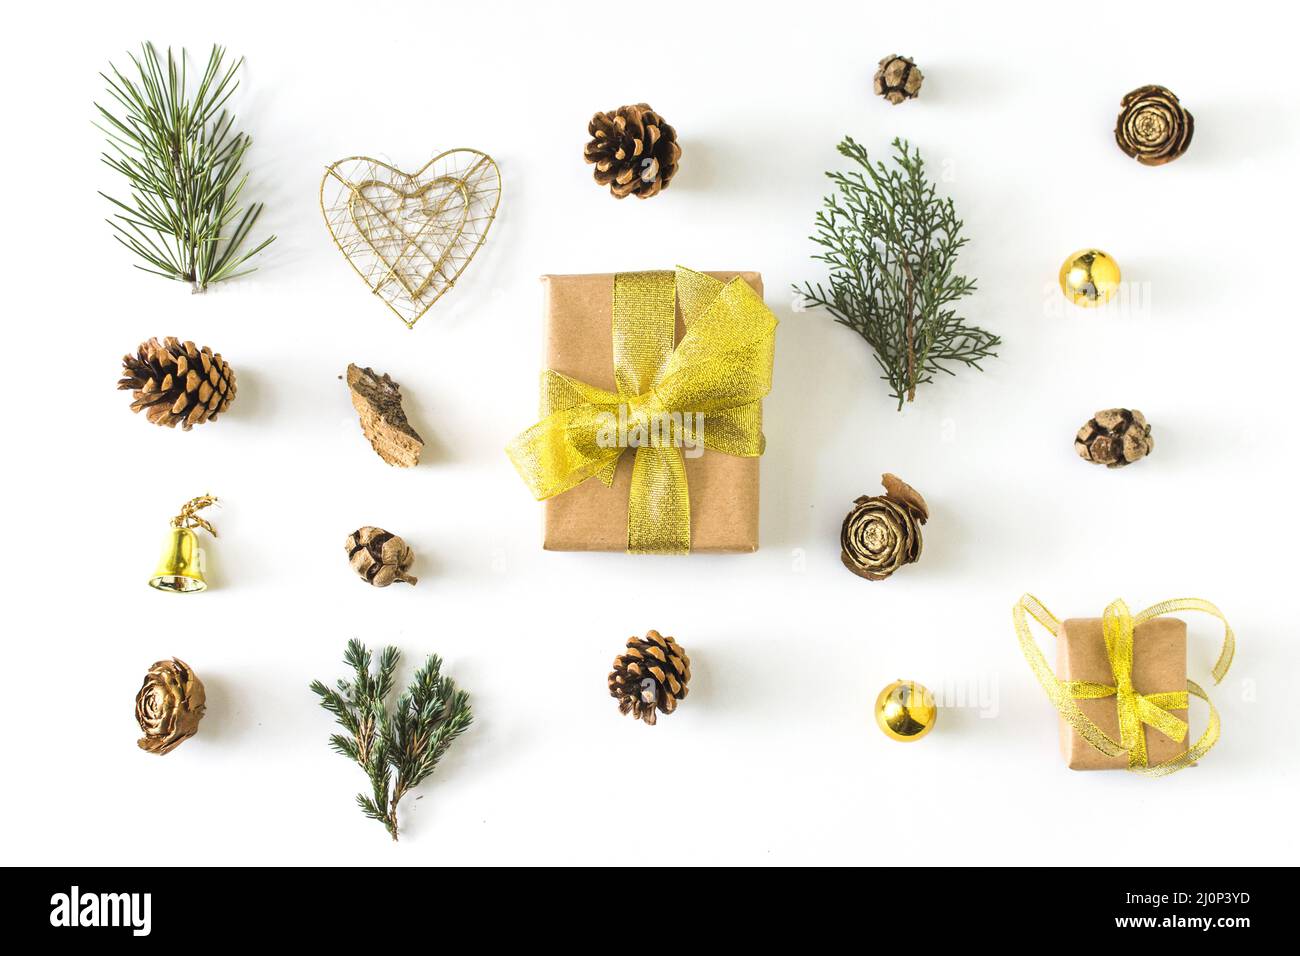 Winter Symbole rund um Geschenk. Hohe Qualität und Auflösung schönes Fotokonzept Stockfoto